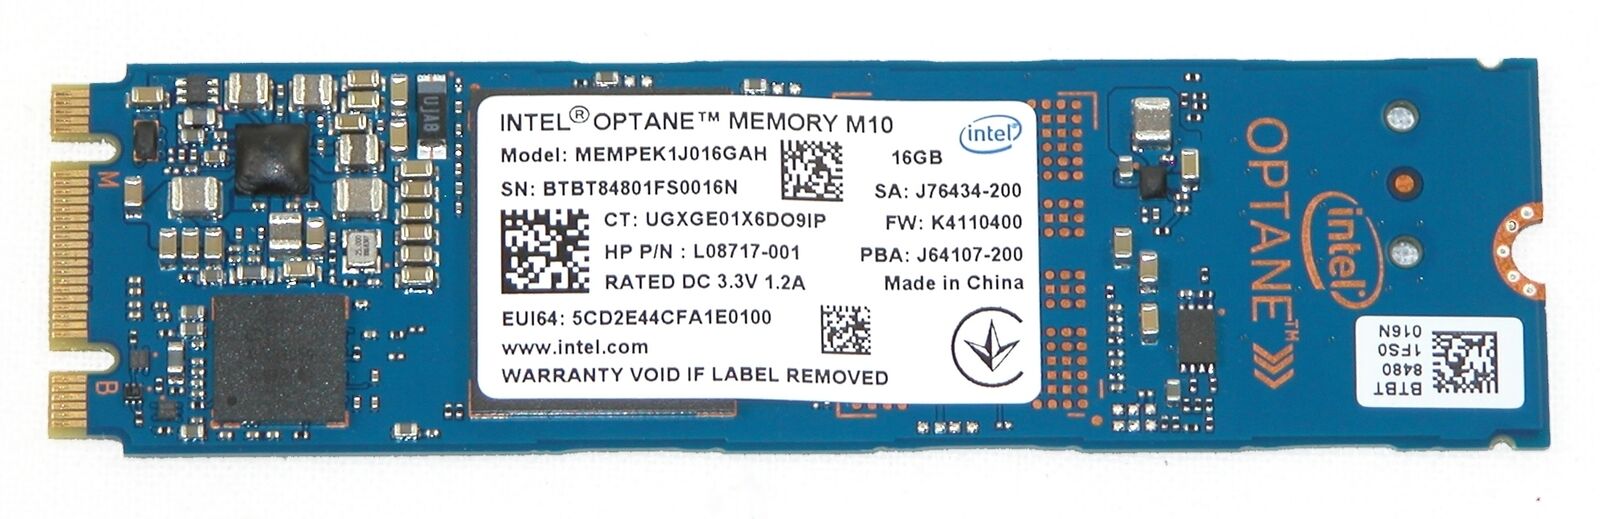 HP L08717-001 Intel MEMPEK1J016GAH 16GB Optane Memory M10 NVMe PCIe M.2 2280